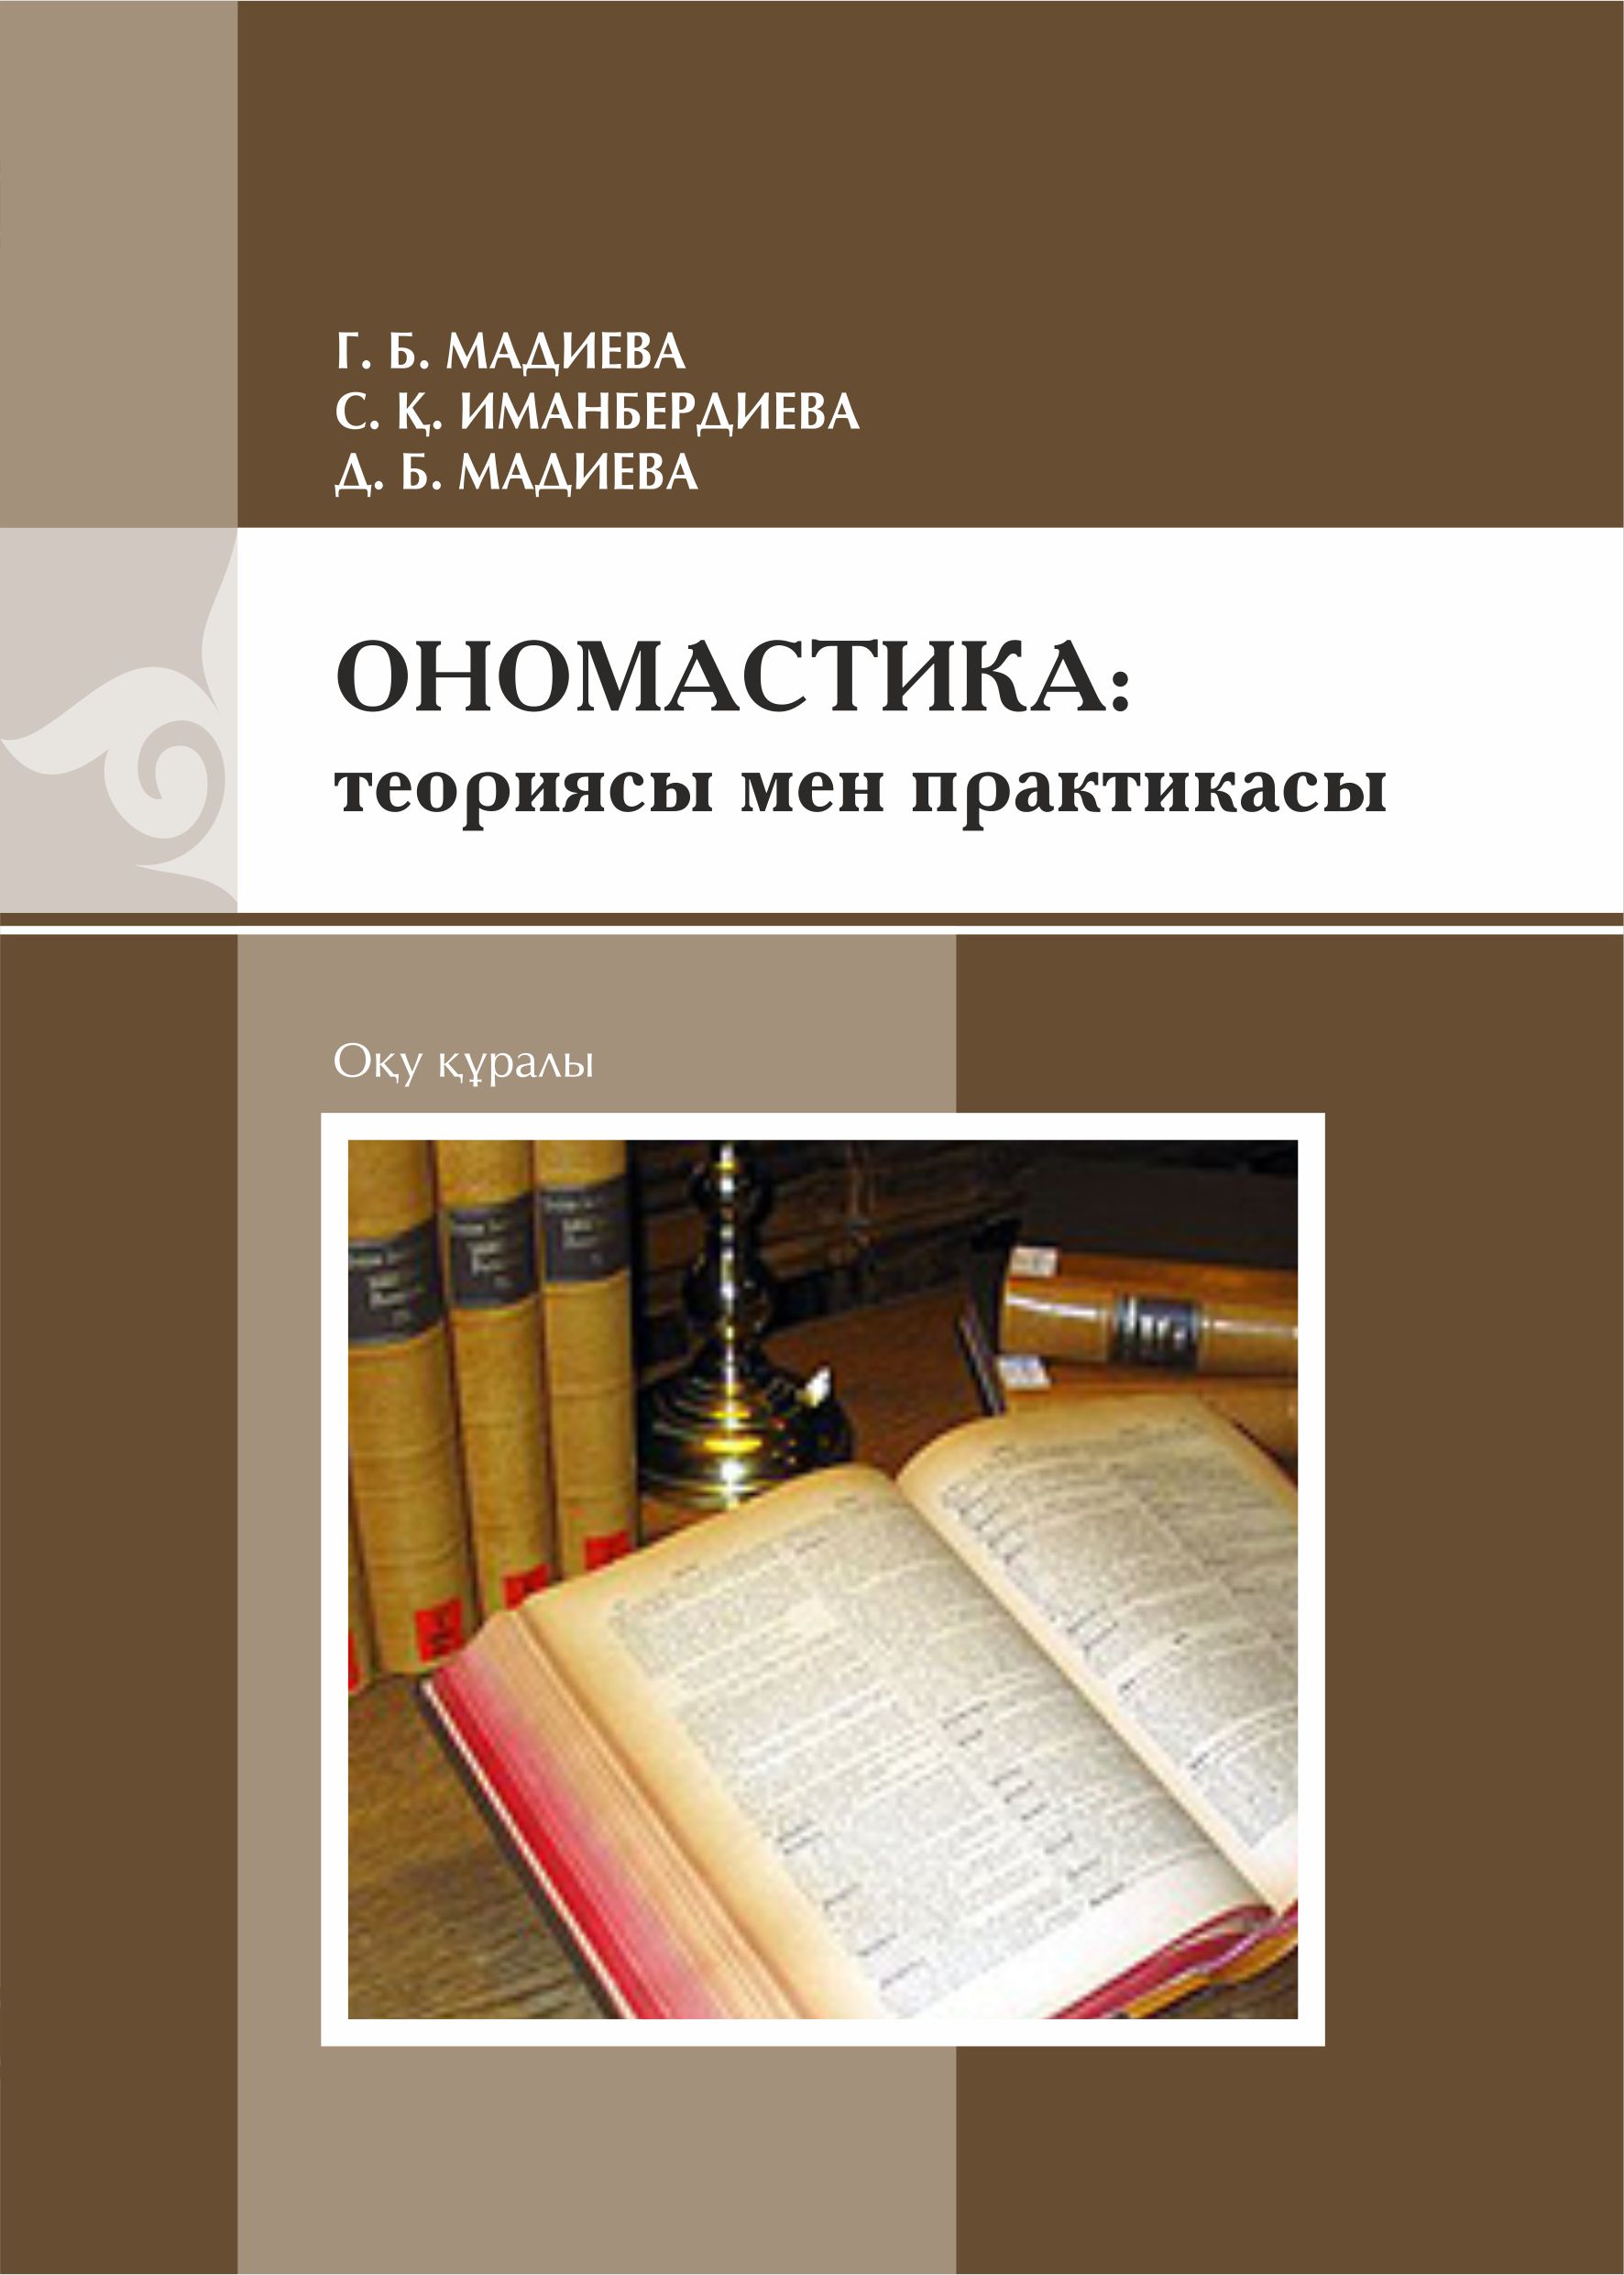 Ономaстикa: теориясы мен практикасы: оқу құралы – 192 б.